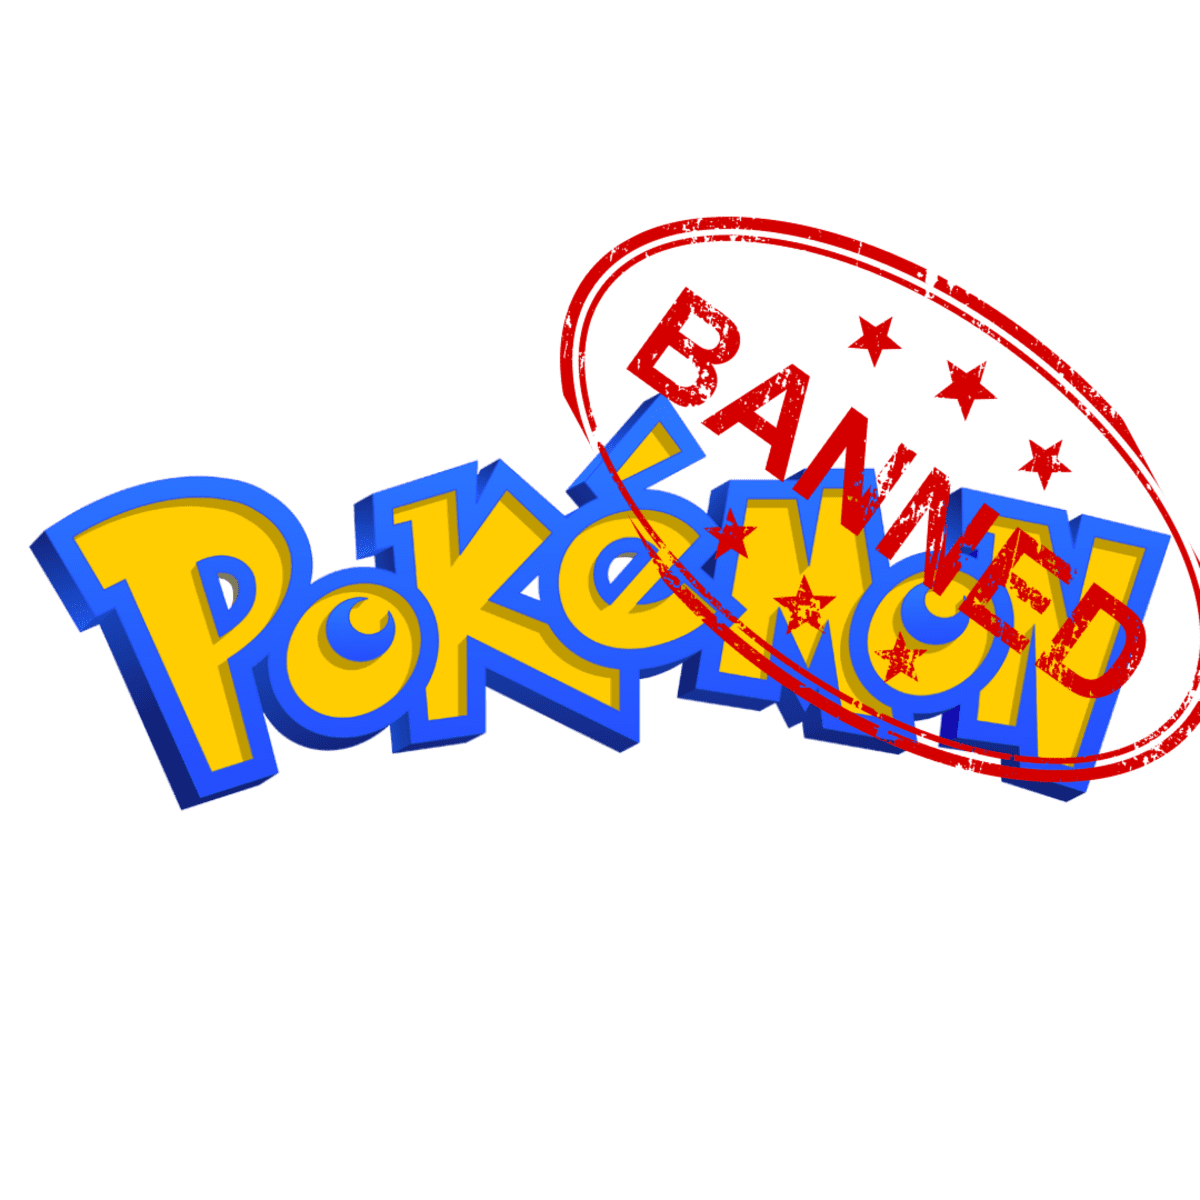 Pokémon TCG: 5 of the Rarest and Most Valuable Alakazam Cards - HobbyLark